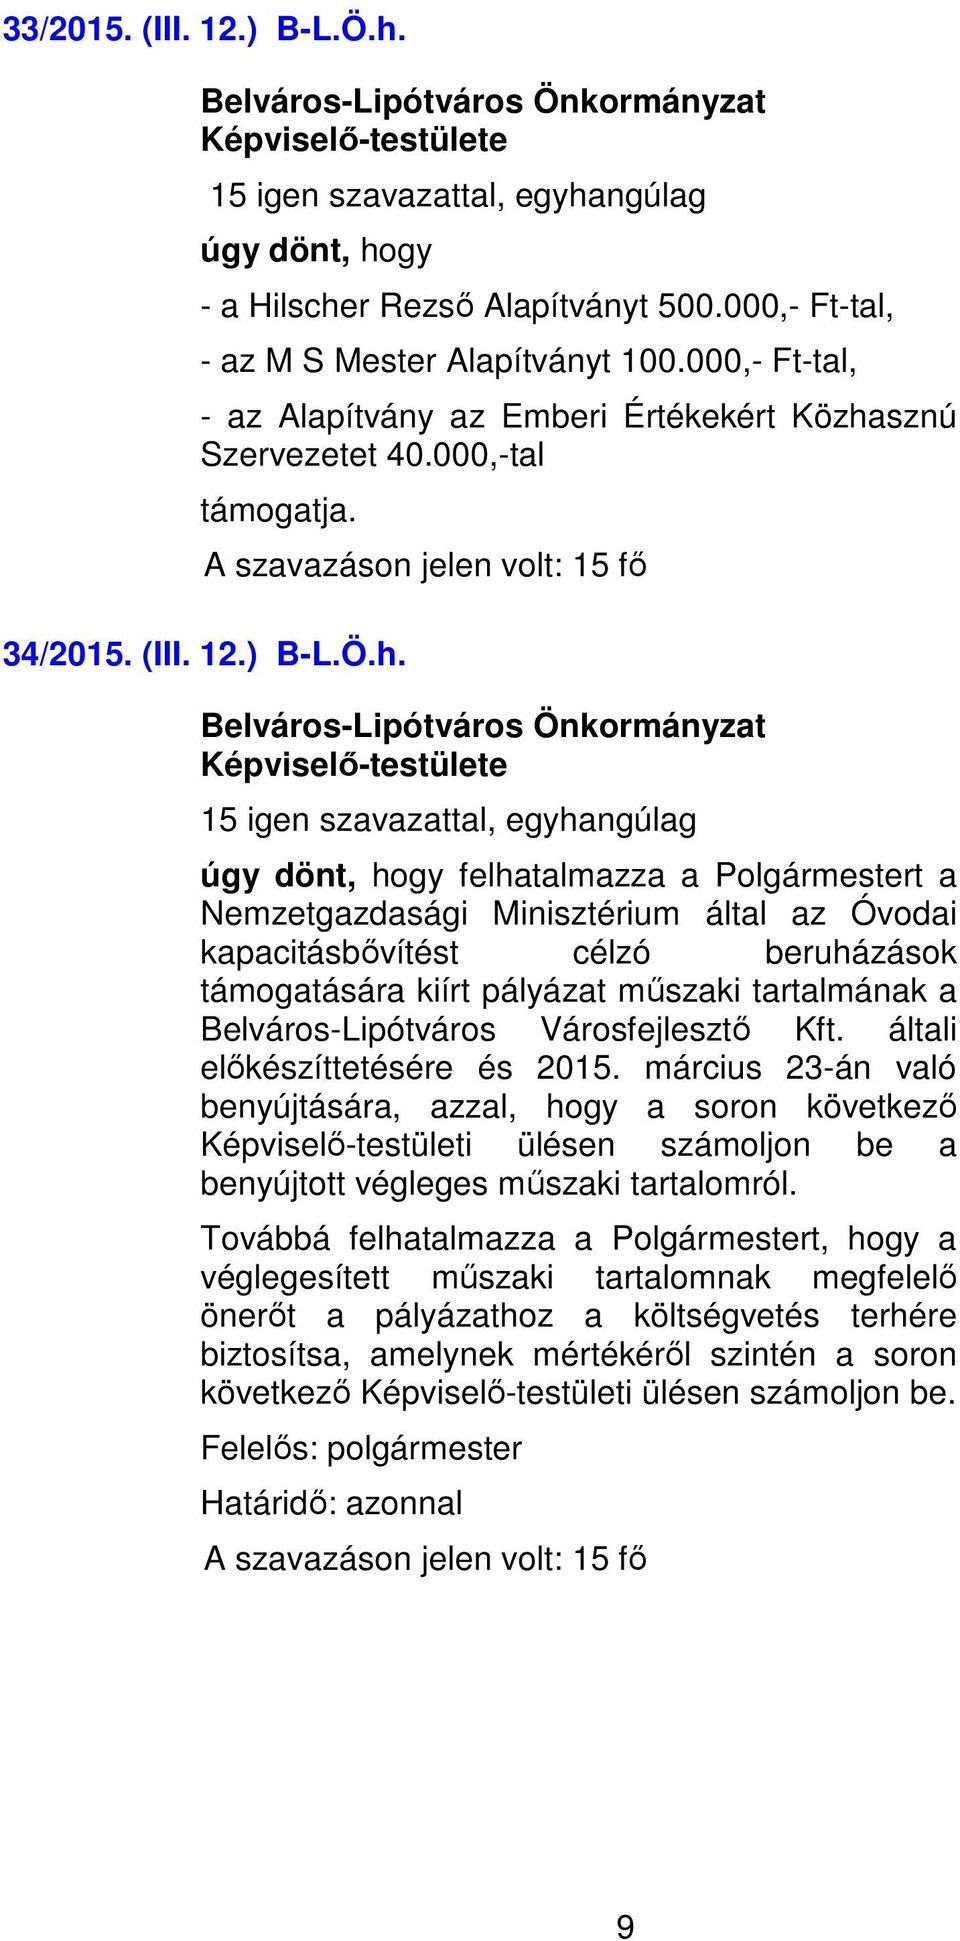 sznú Szervezetet 40.000,-tal támogatja. 34/2015. (III. 12.) B-L.Ö.h.